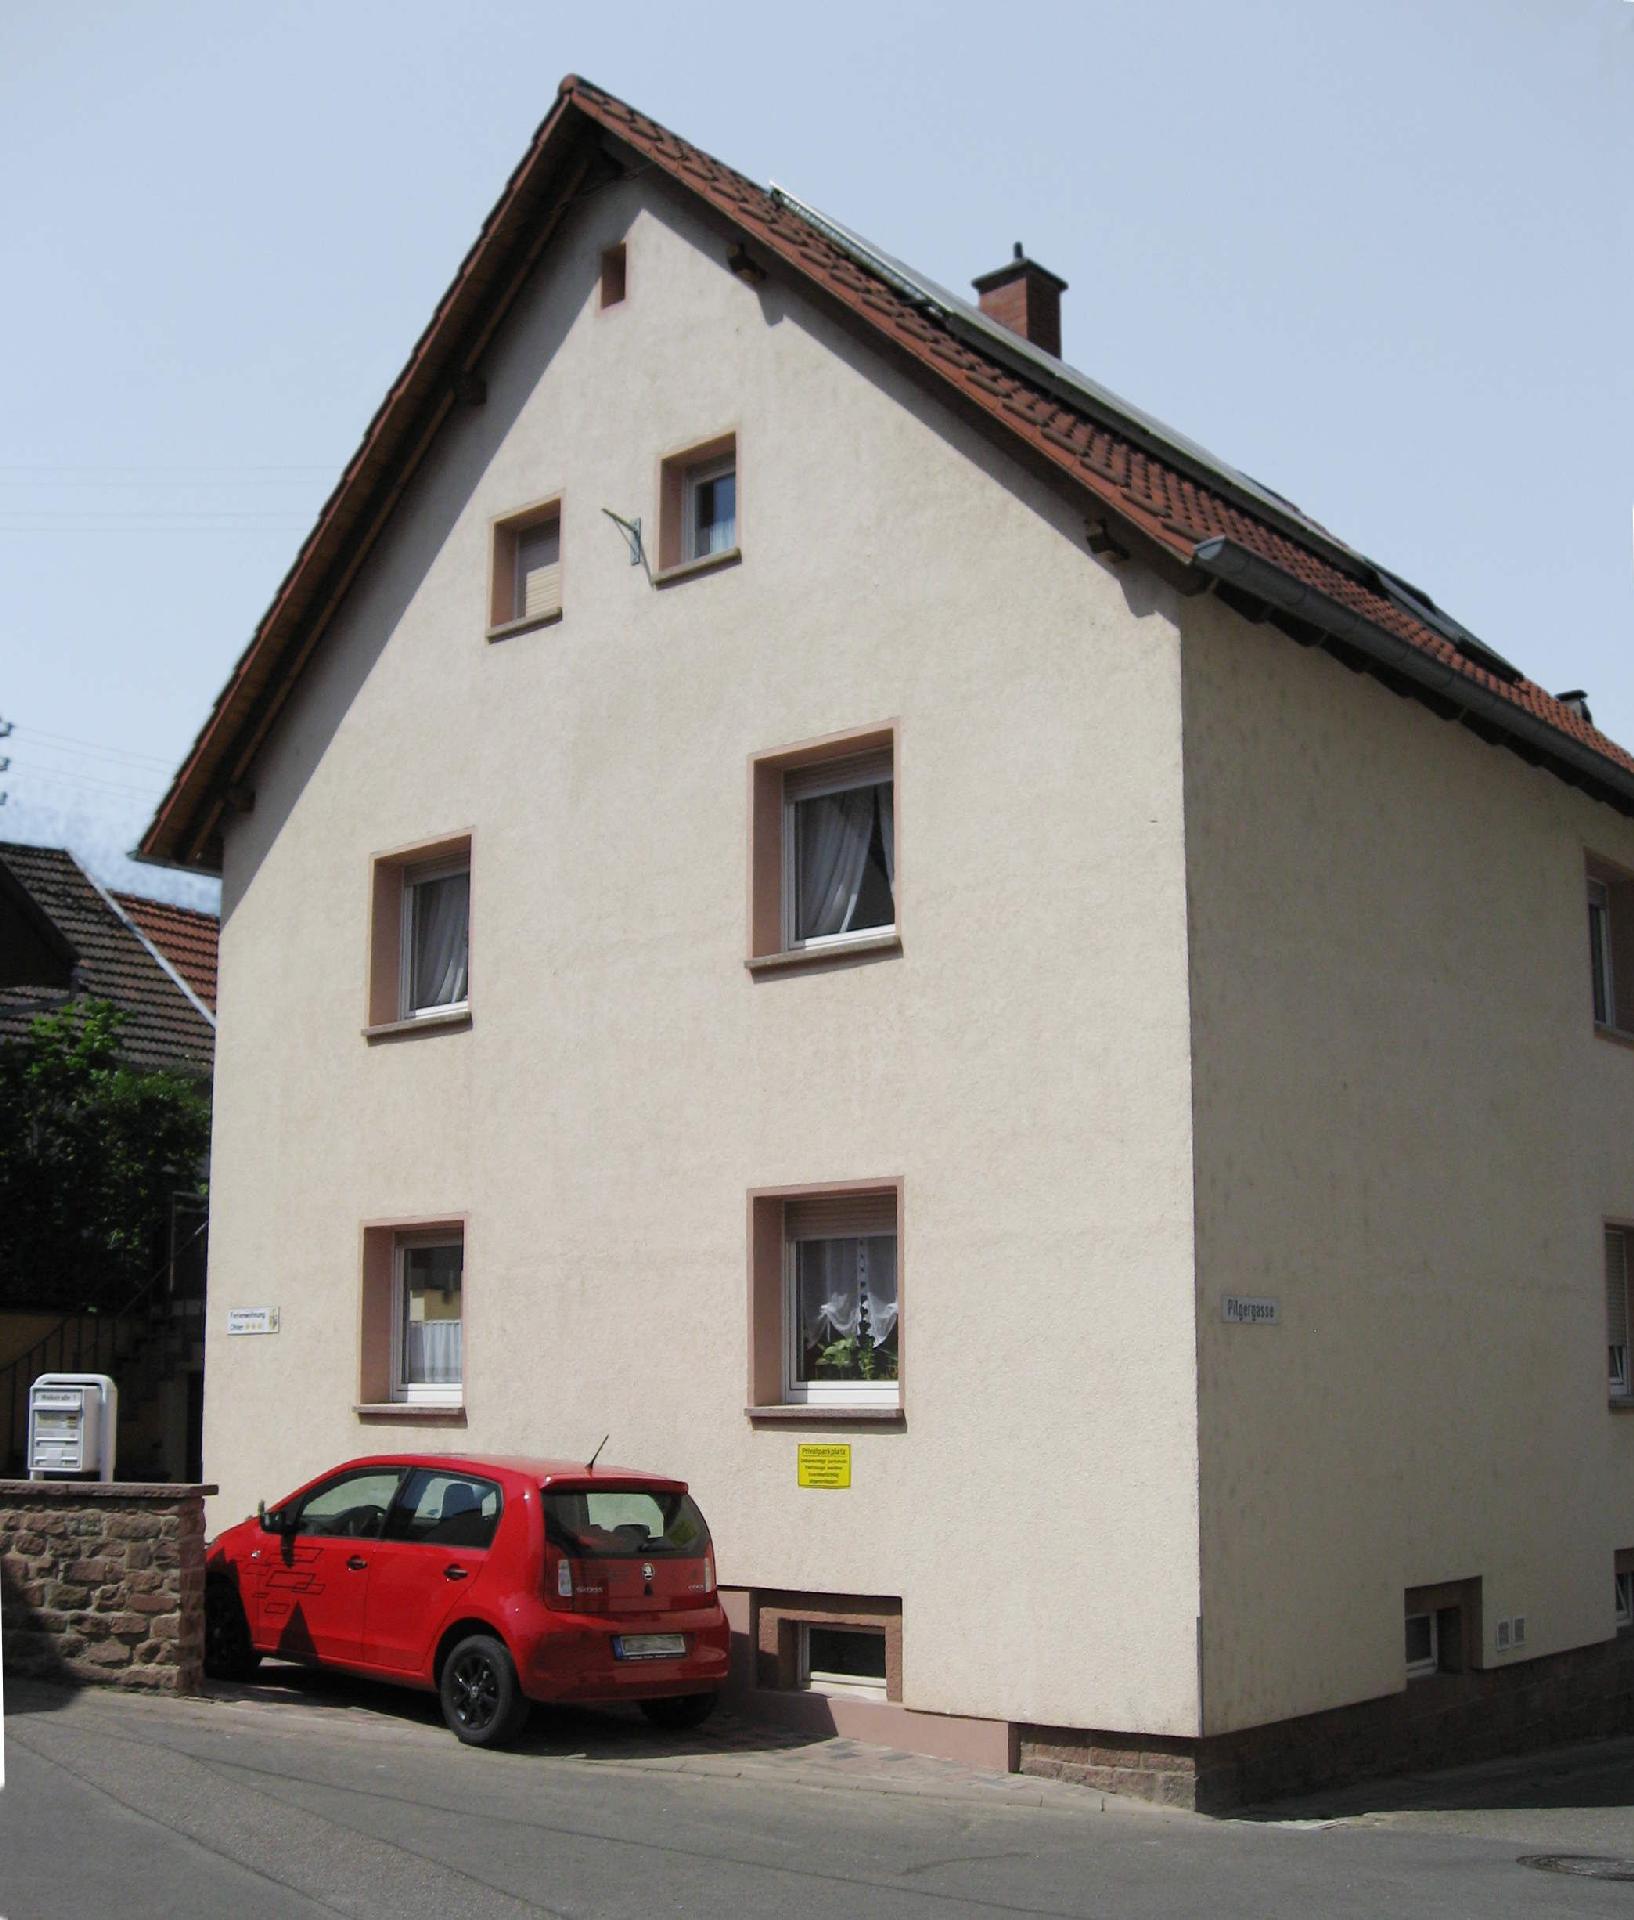 Ferienwohnung für 4 Personen ca. 58 m² i Ferienwohnung  Pfalz